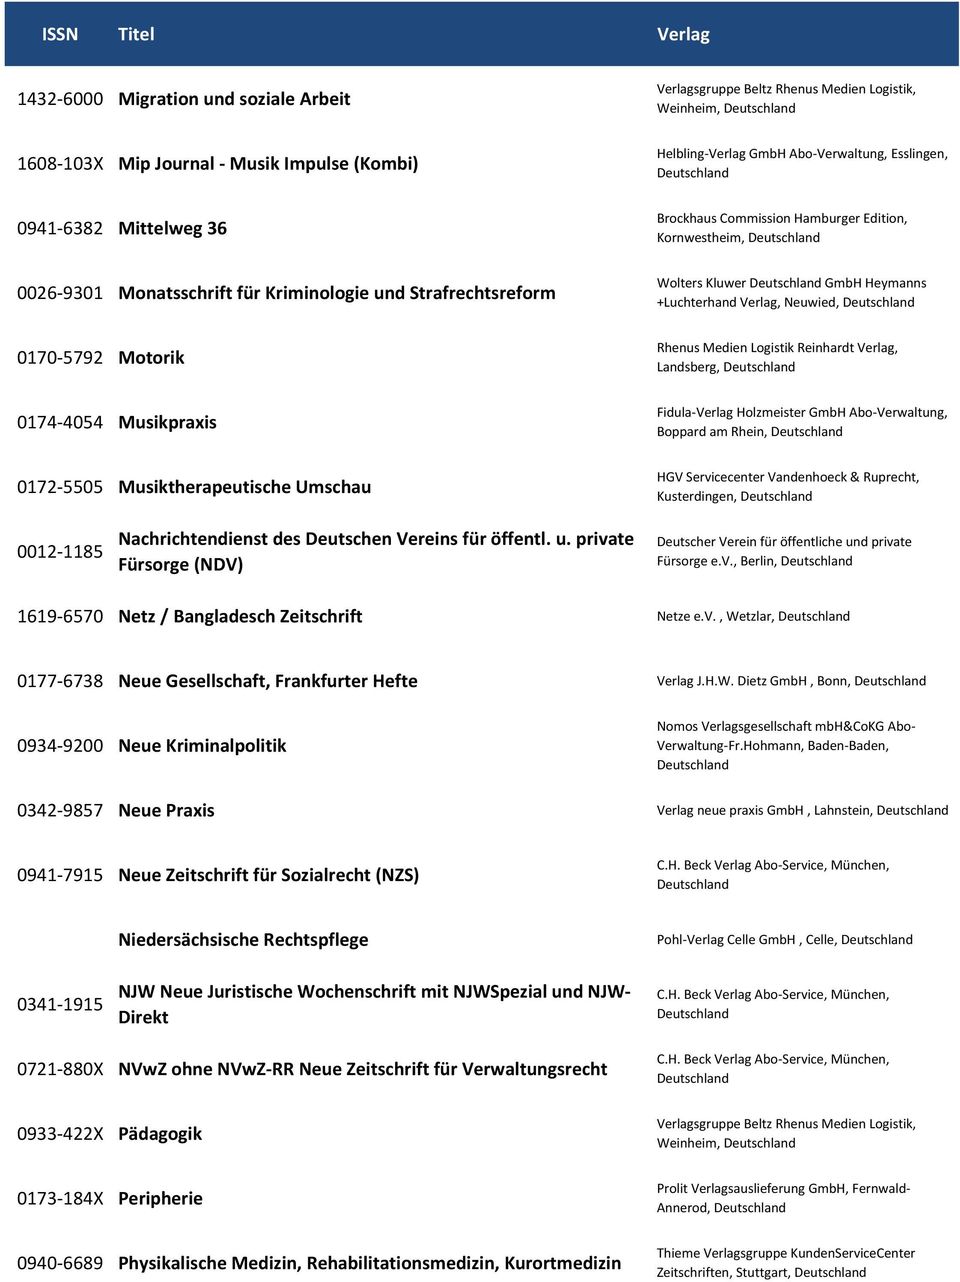 Kornwestheim, Wolters Kluwer GmbH Heymanns +Luchterhand Verlag, Neuwied, Rhenus Medien Logistik Reinhardt Verlag, Landsberg, Fidula-Verlag Holzmeister GmbH Abo-Verwaltung, Boppard am Rhein,